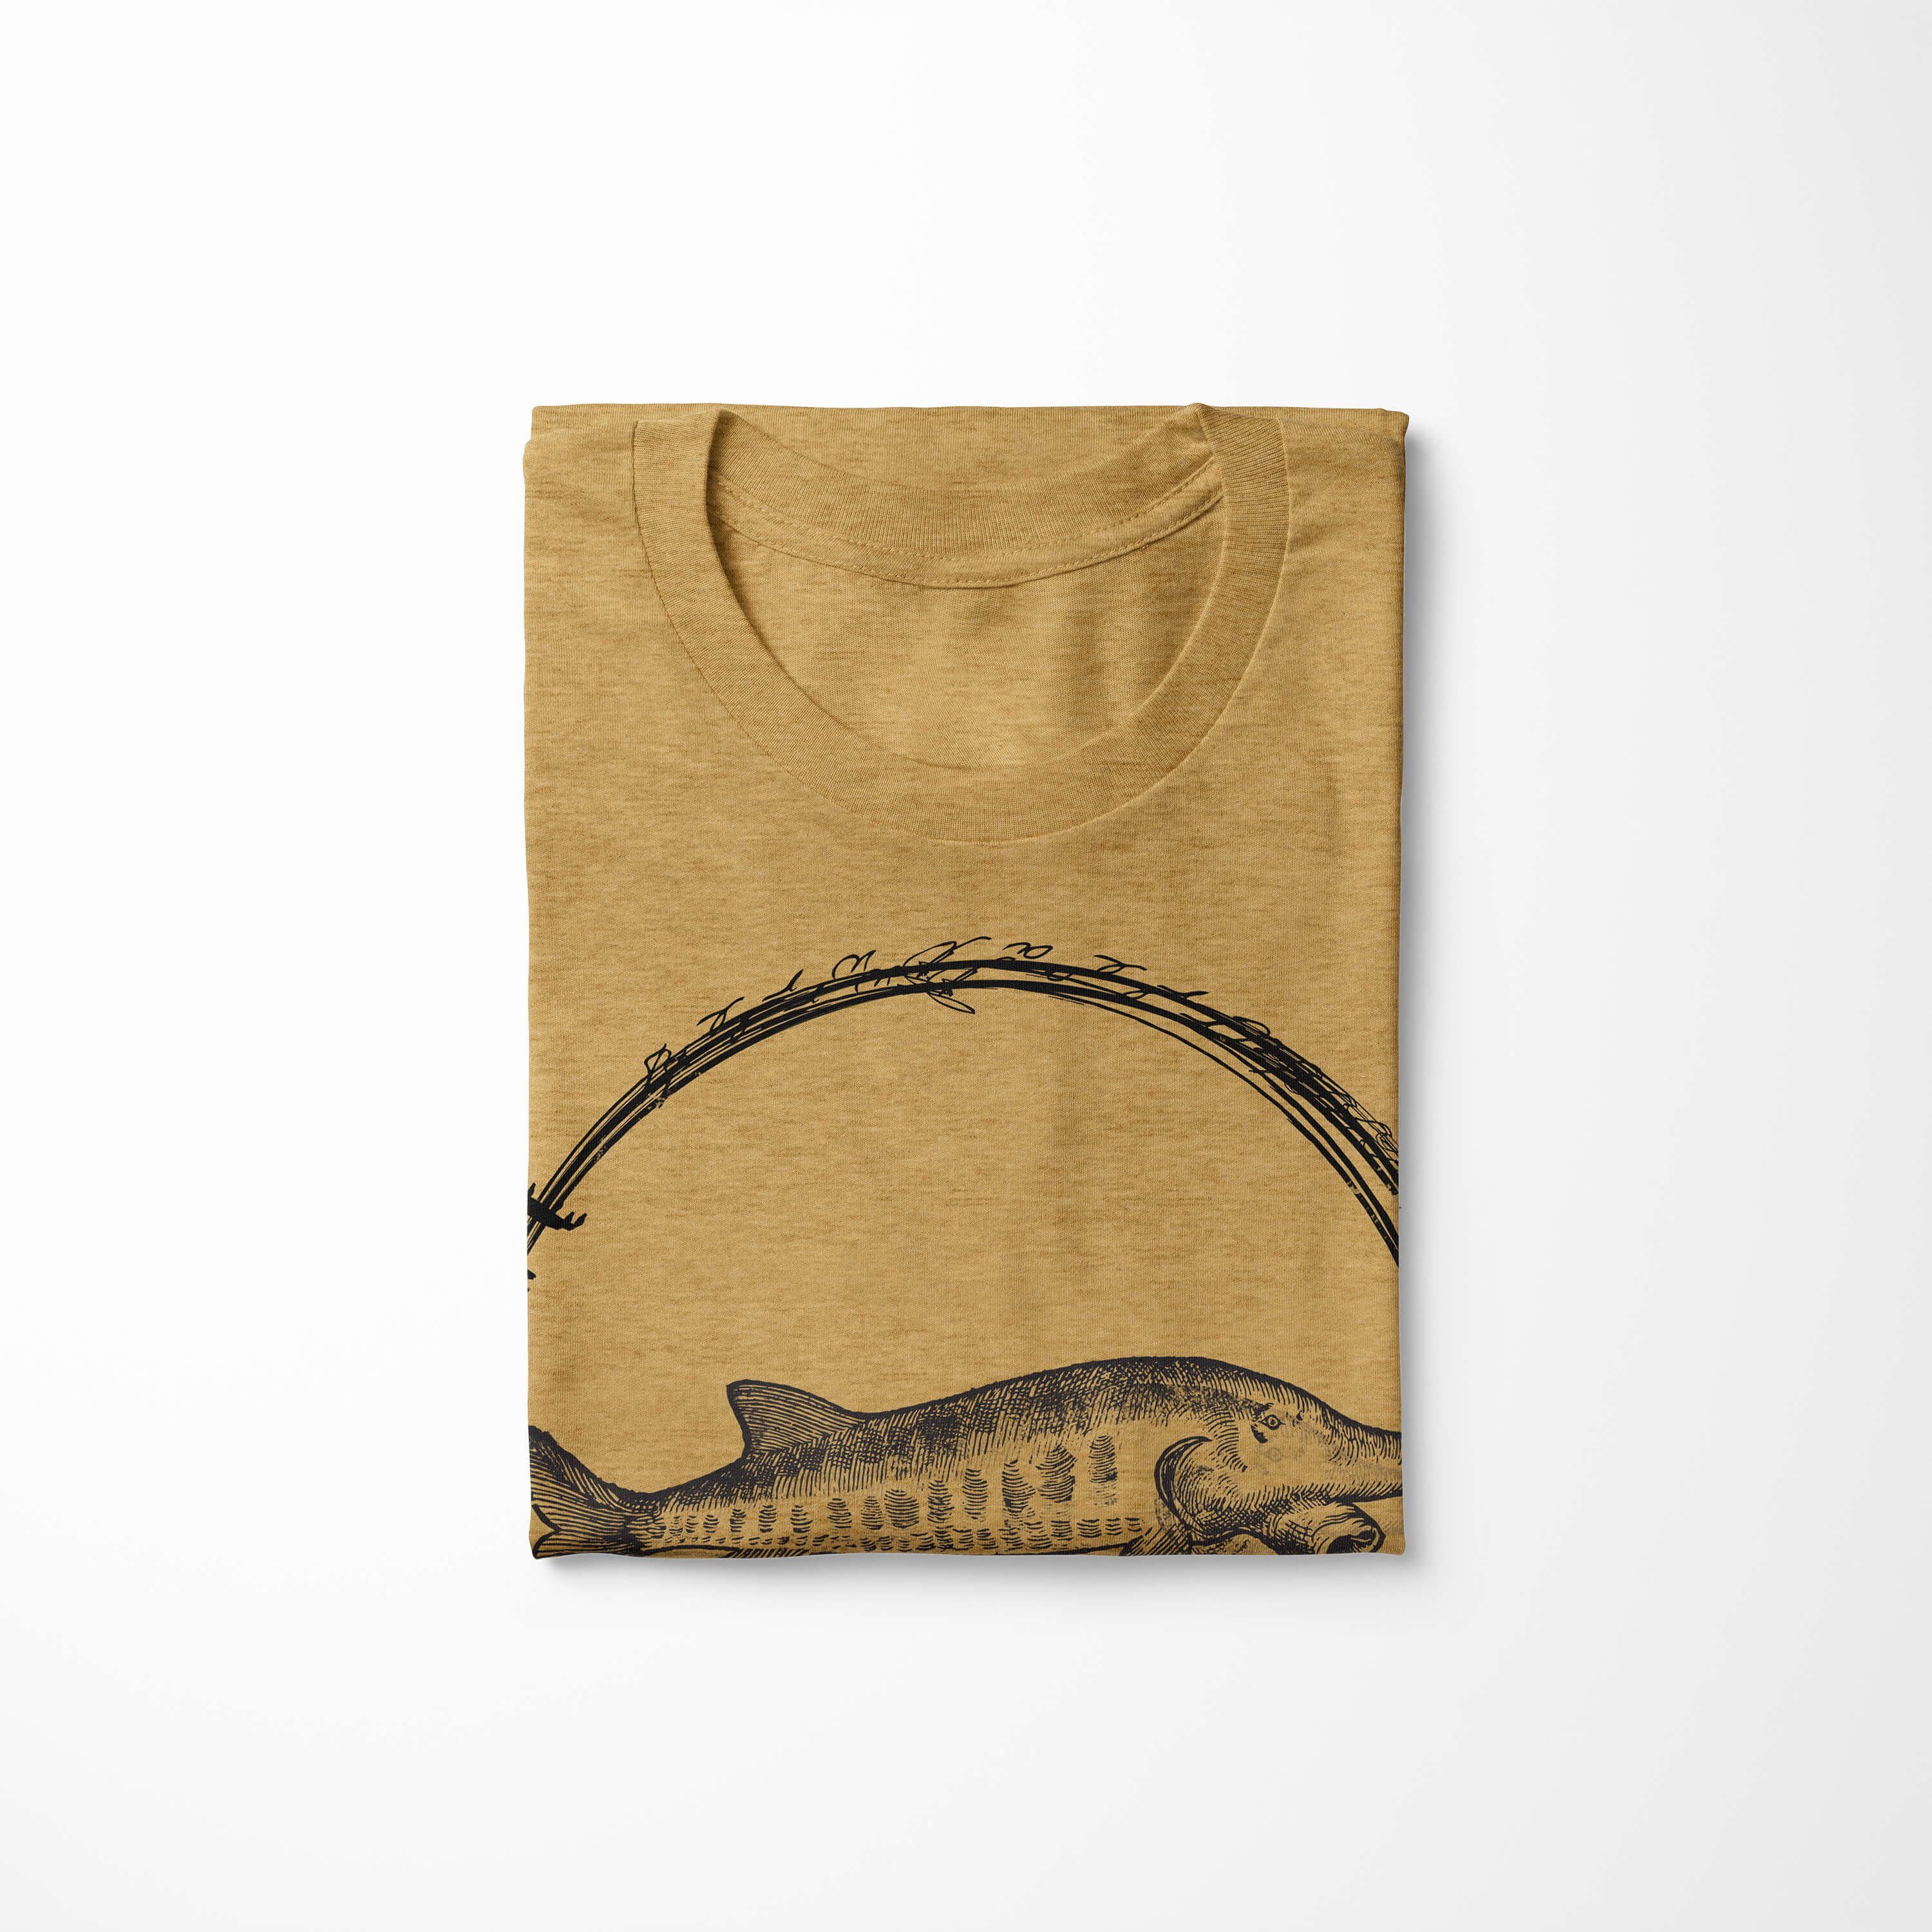 Sinus Art sportlicher Struktur und Schnitt - Tiefsee Fische Creatures, Gold / Antique T-Shirt Sea 090 Sea Serie: T-Shirt feine